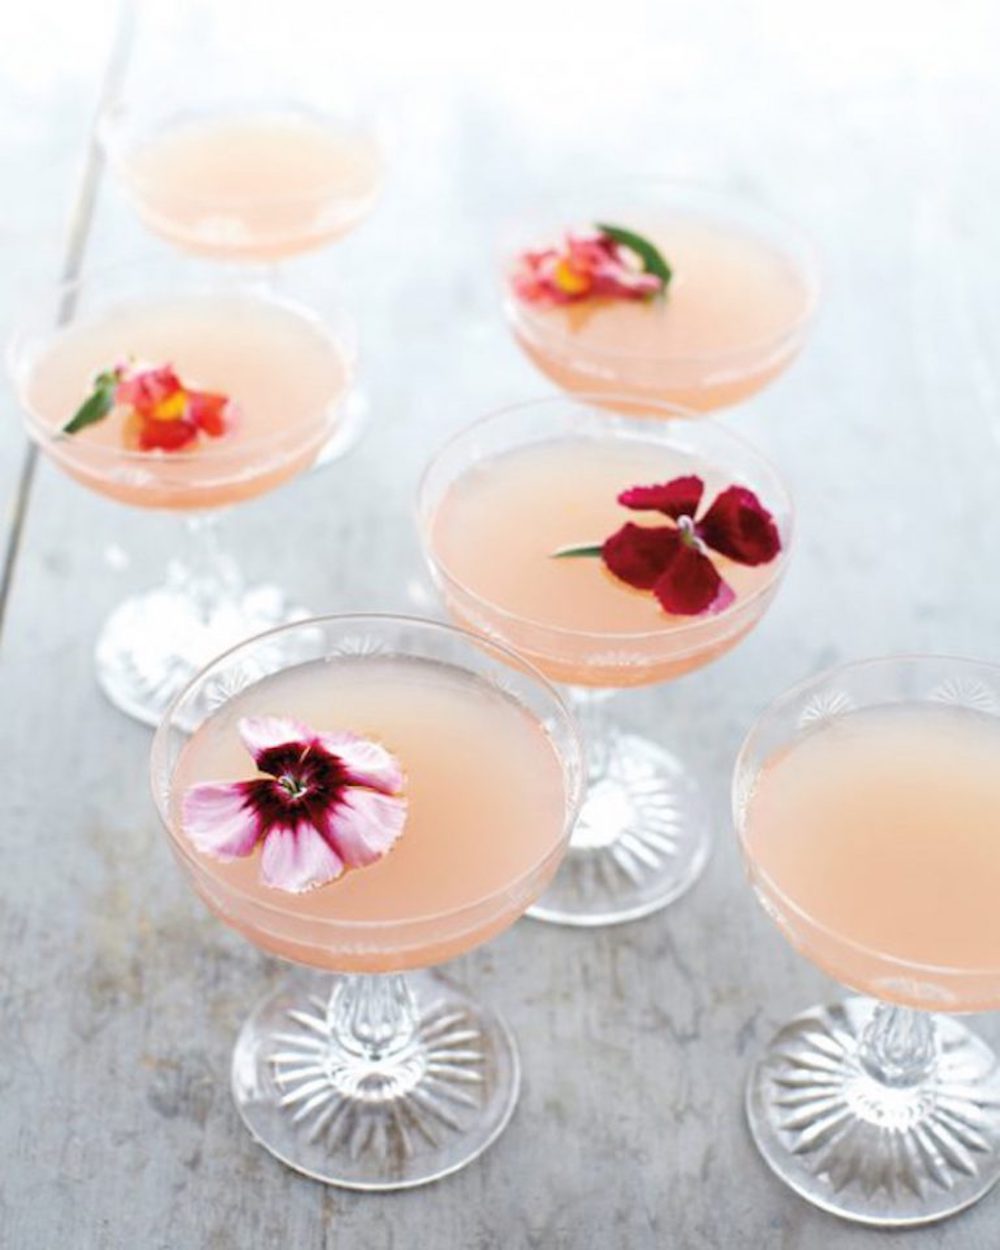 Lillet rose cocktail